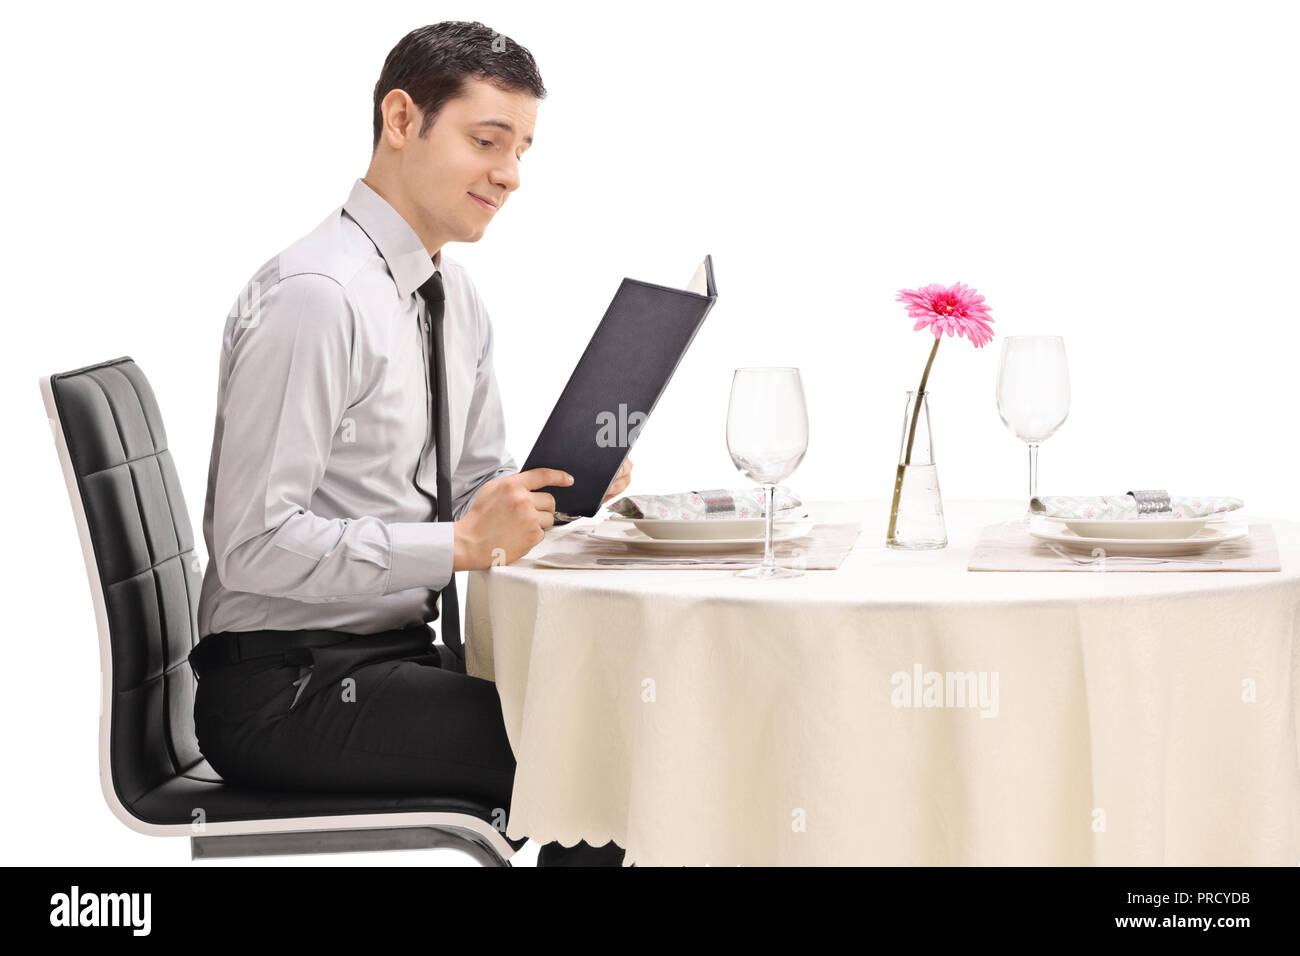 Junge Mann in einem Restaurant Tisch lesen das Menü auf weißem Hintergrund Stockfoto